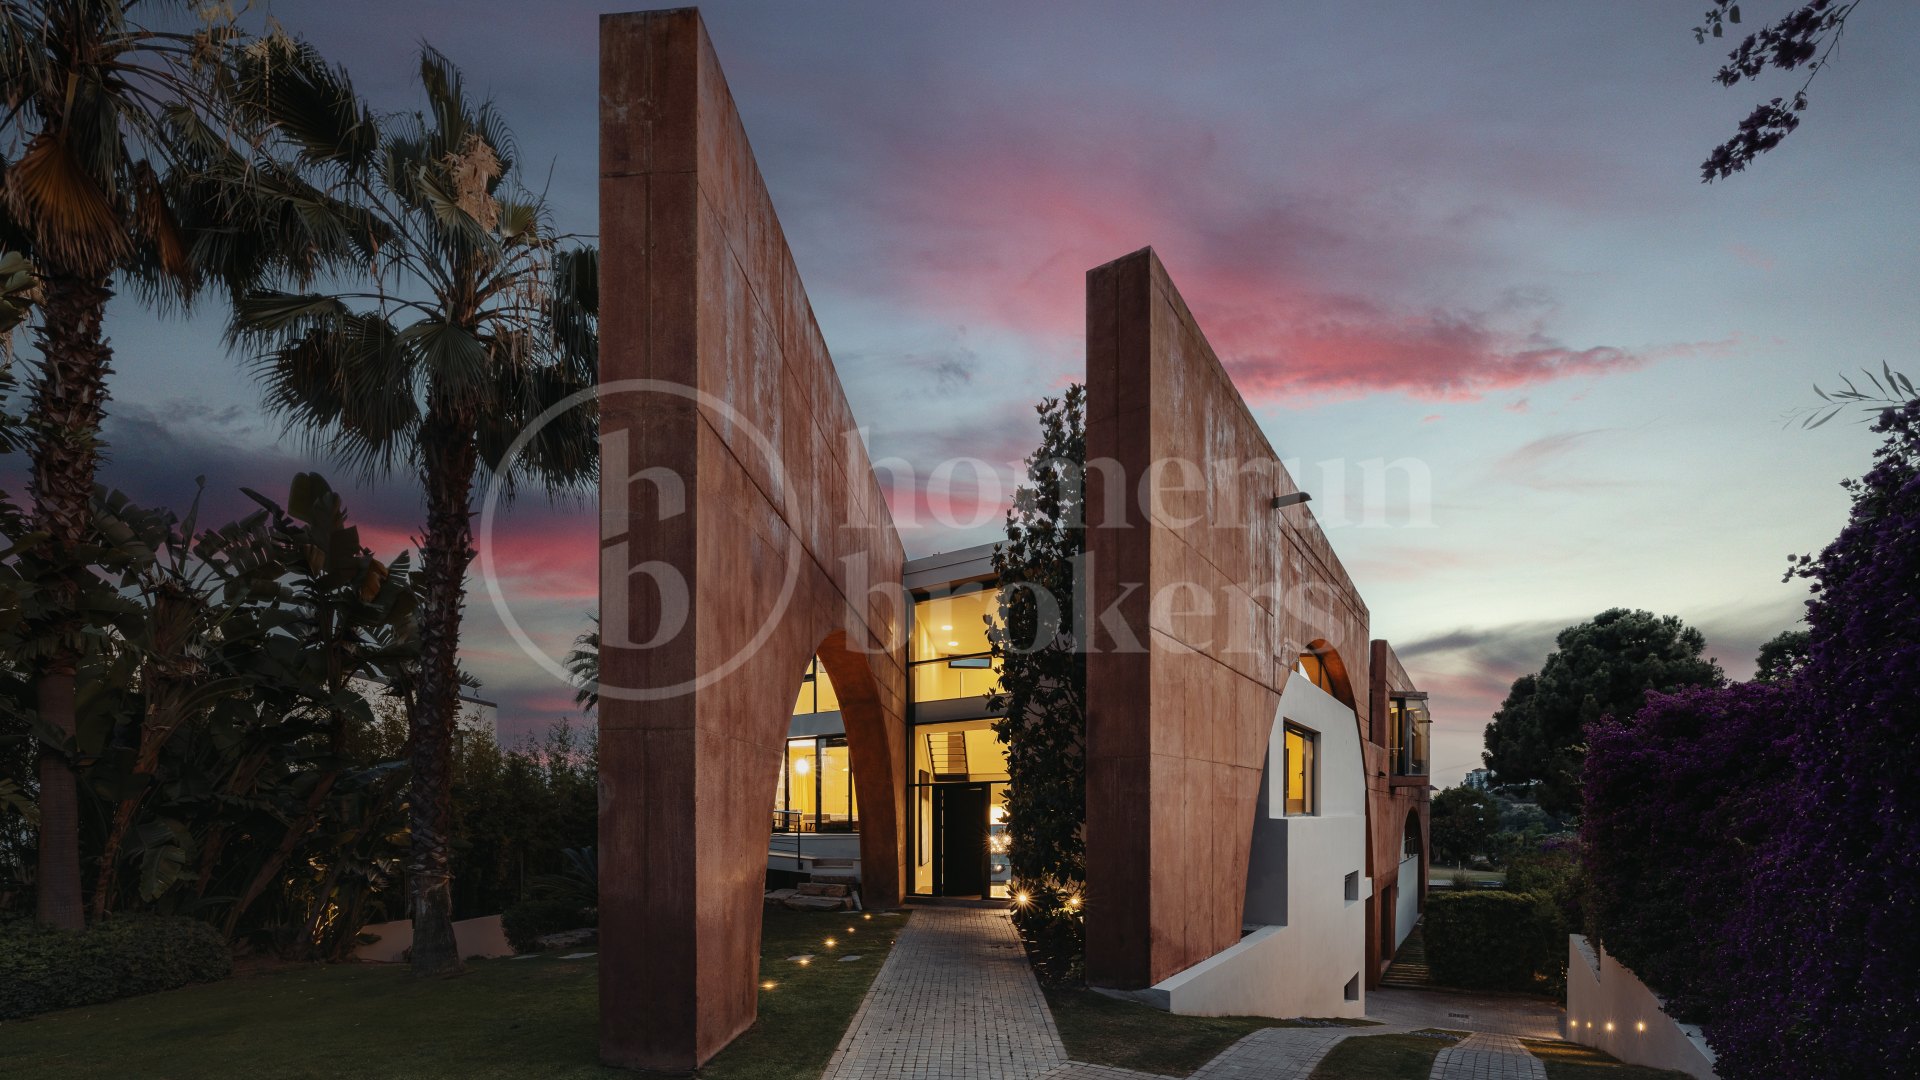 Villa Futura - Spektakulär lyxvilla med ekologiskt fokus och fantastisk utsikt